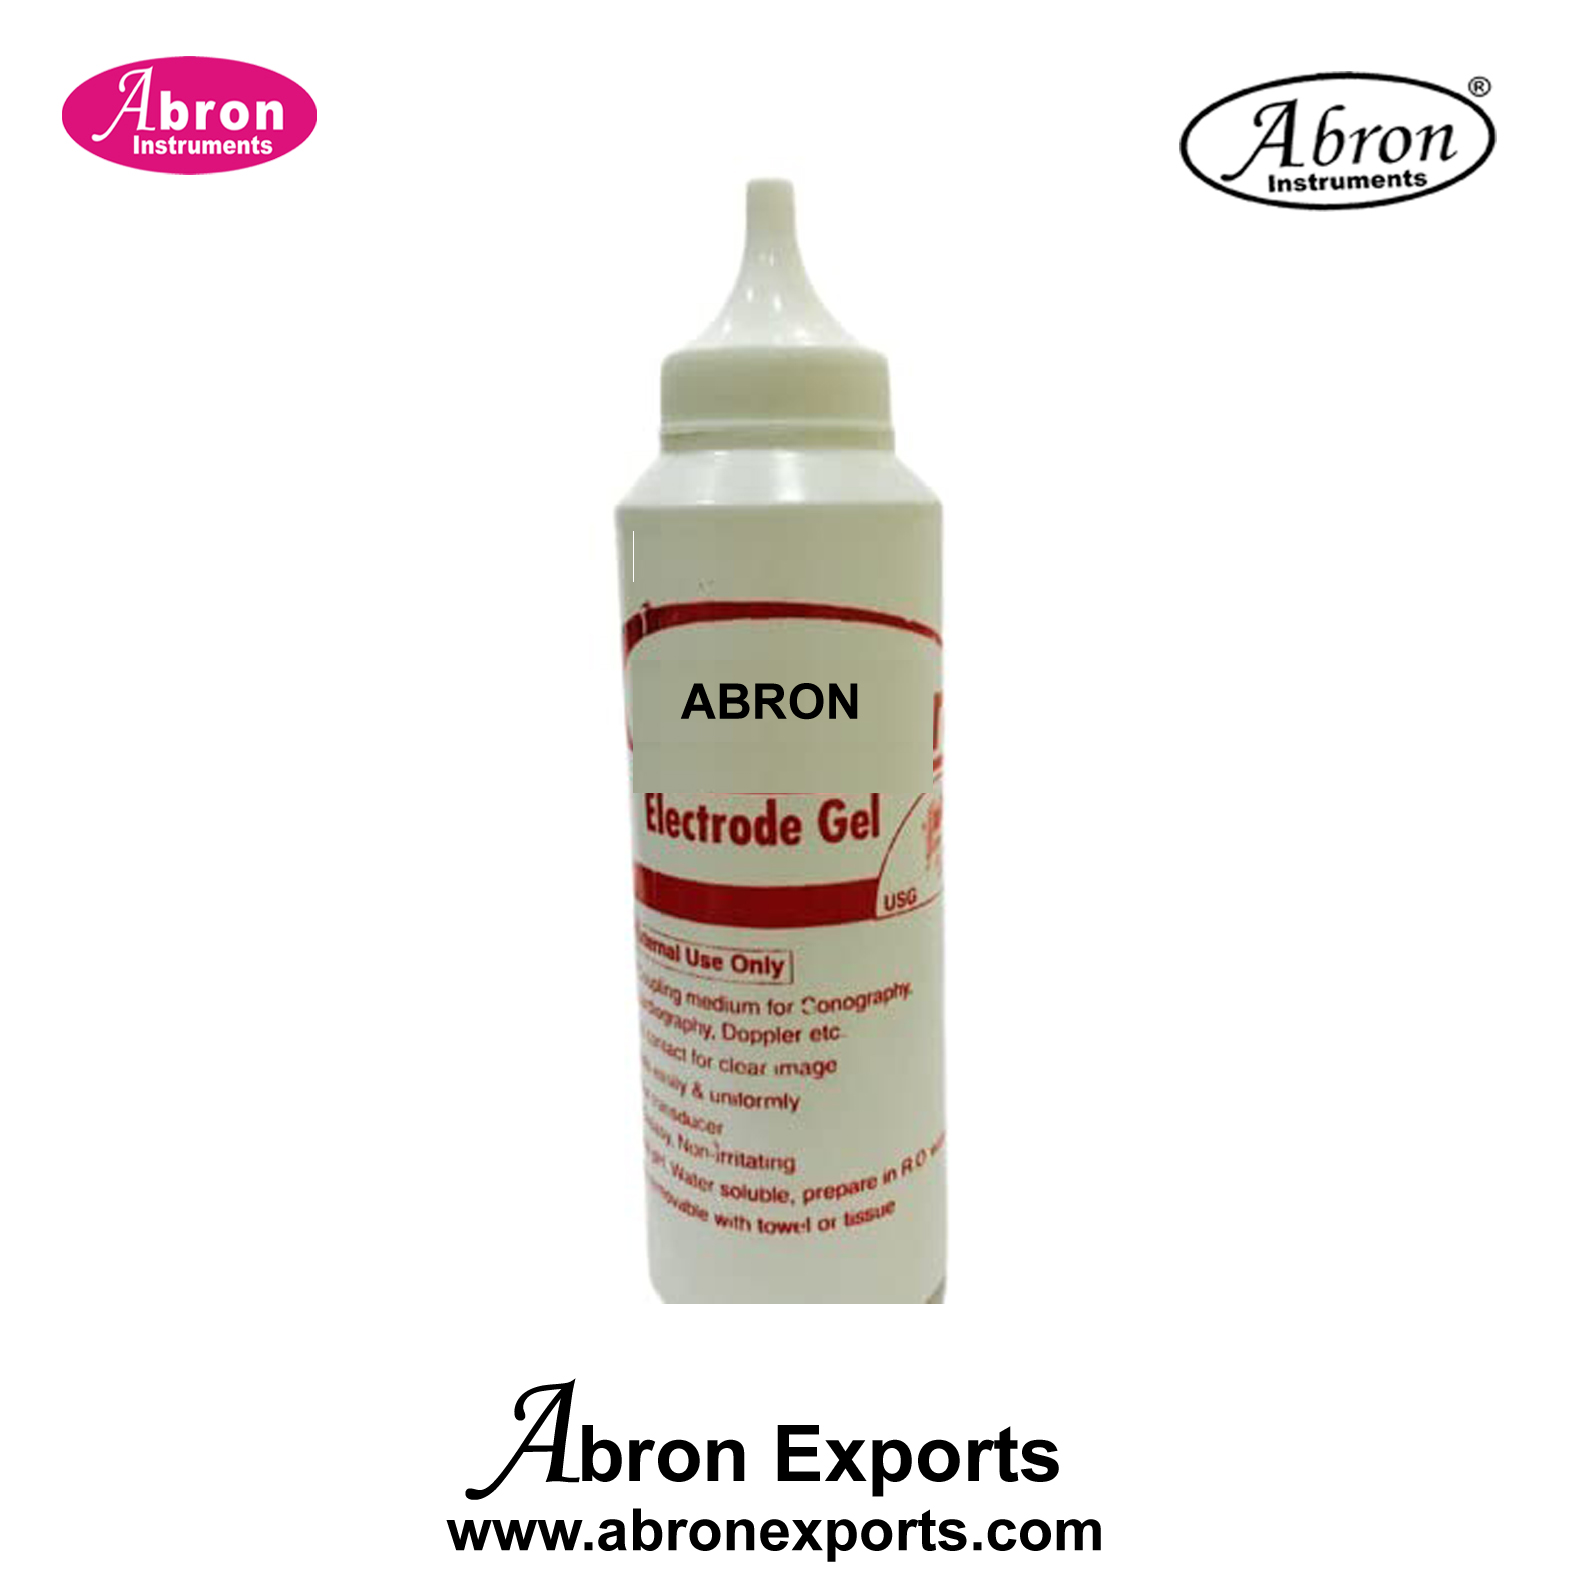 ECG paste 3 bottles 200gm cream gel tube Abron ABM-2504 